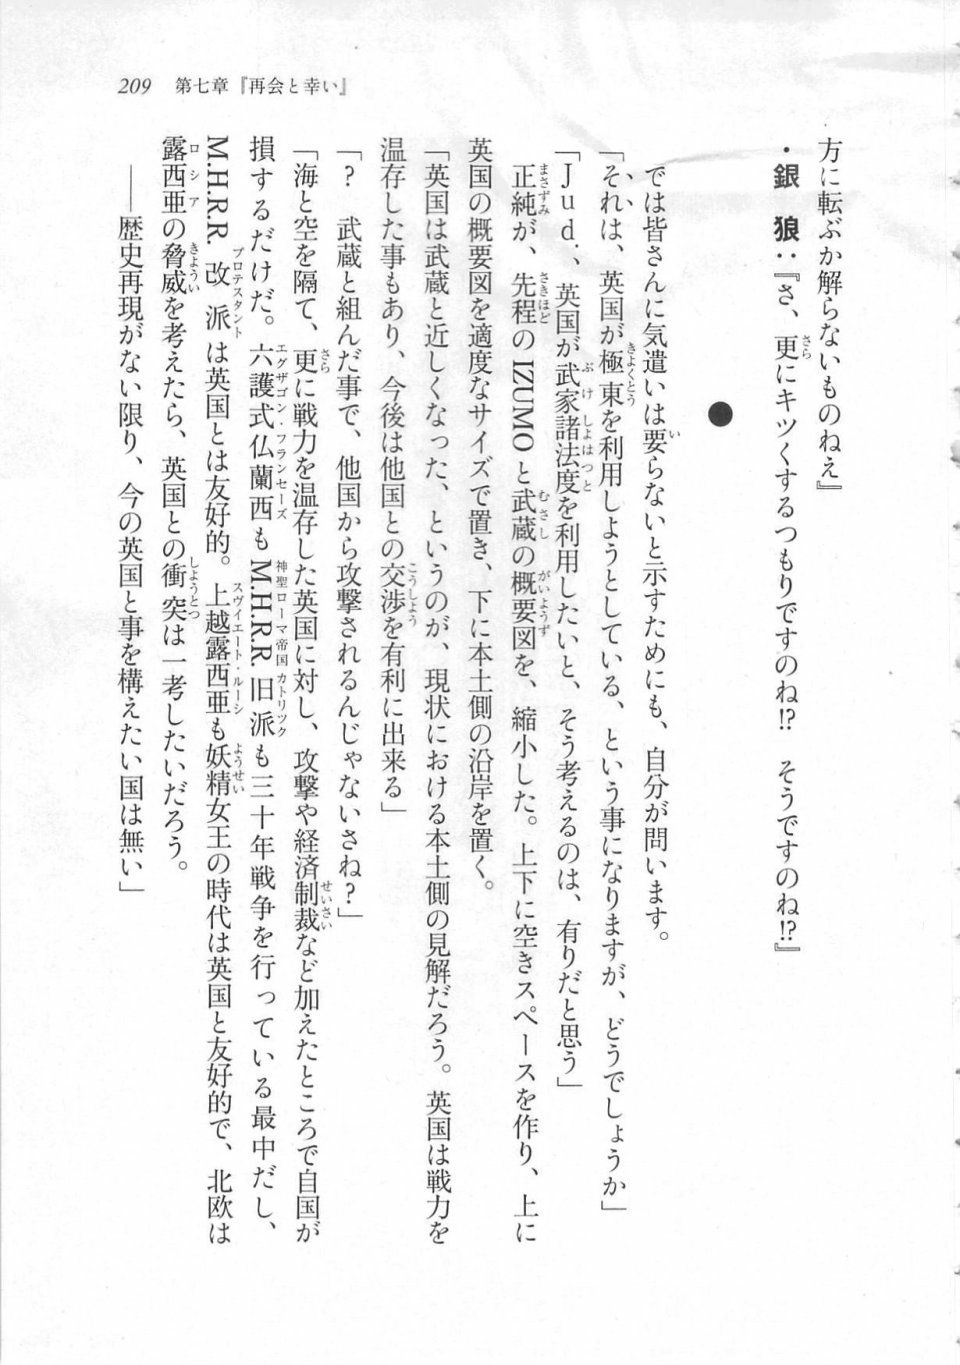 Kyoukai Senjou no Horizon LN Sidestory Vol 3 - Photo #213